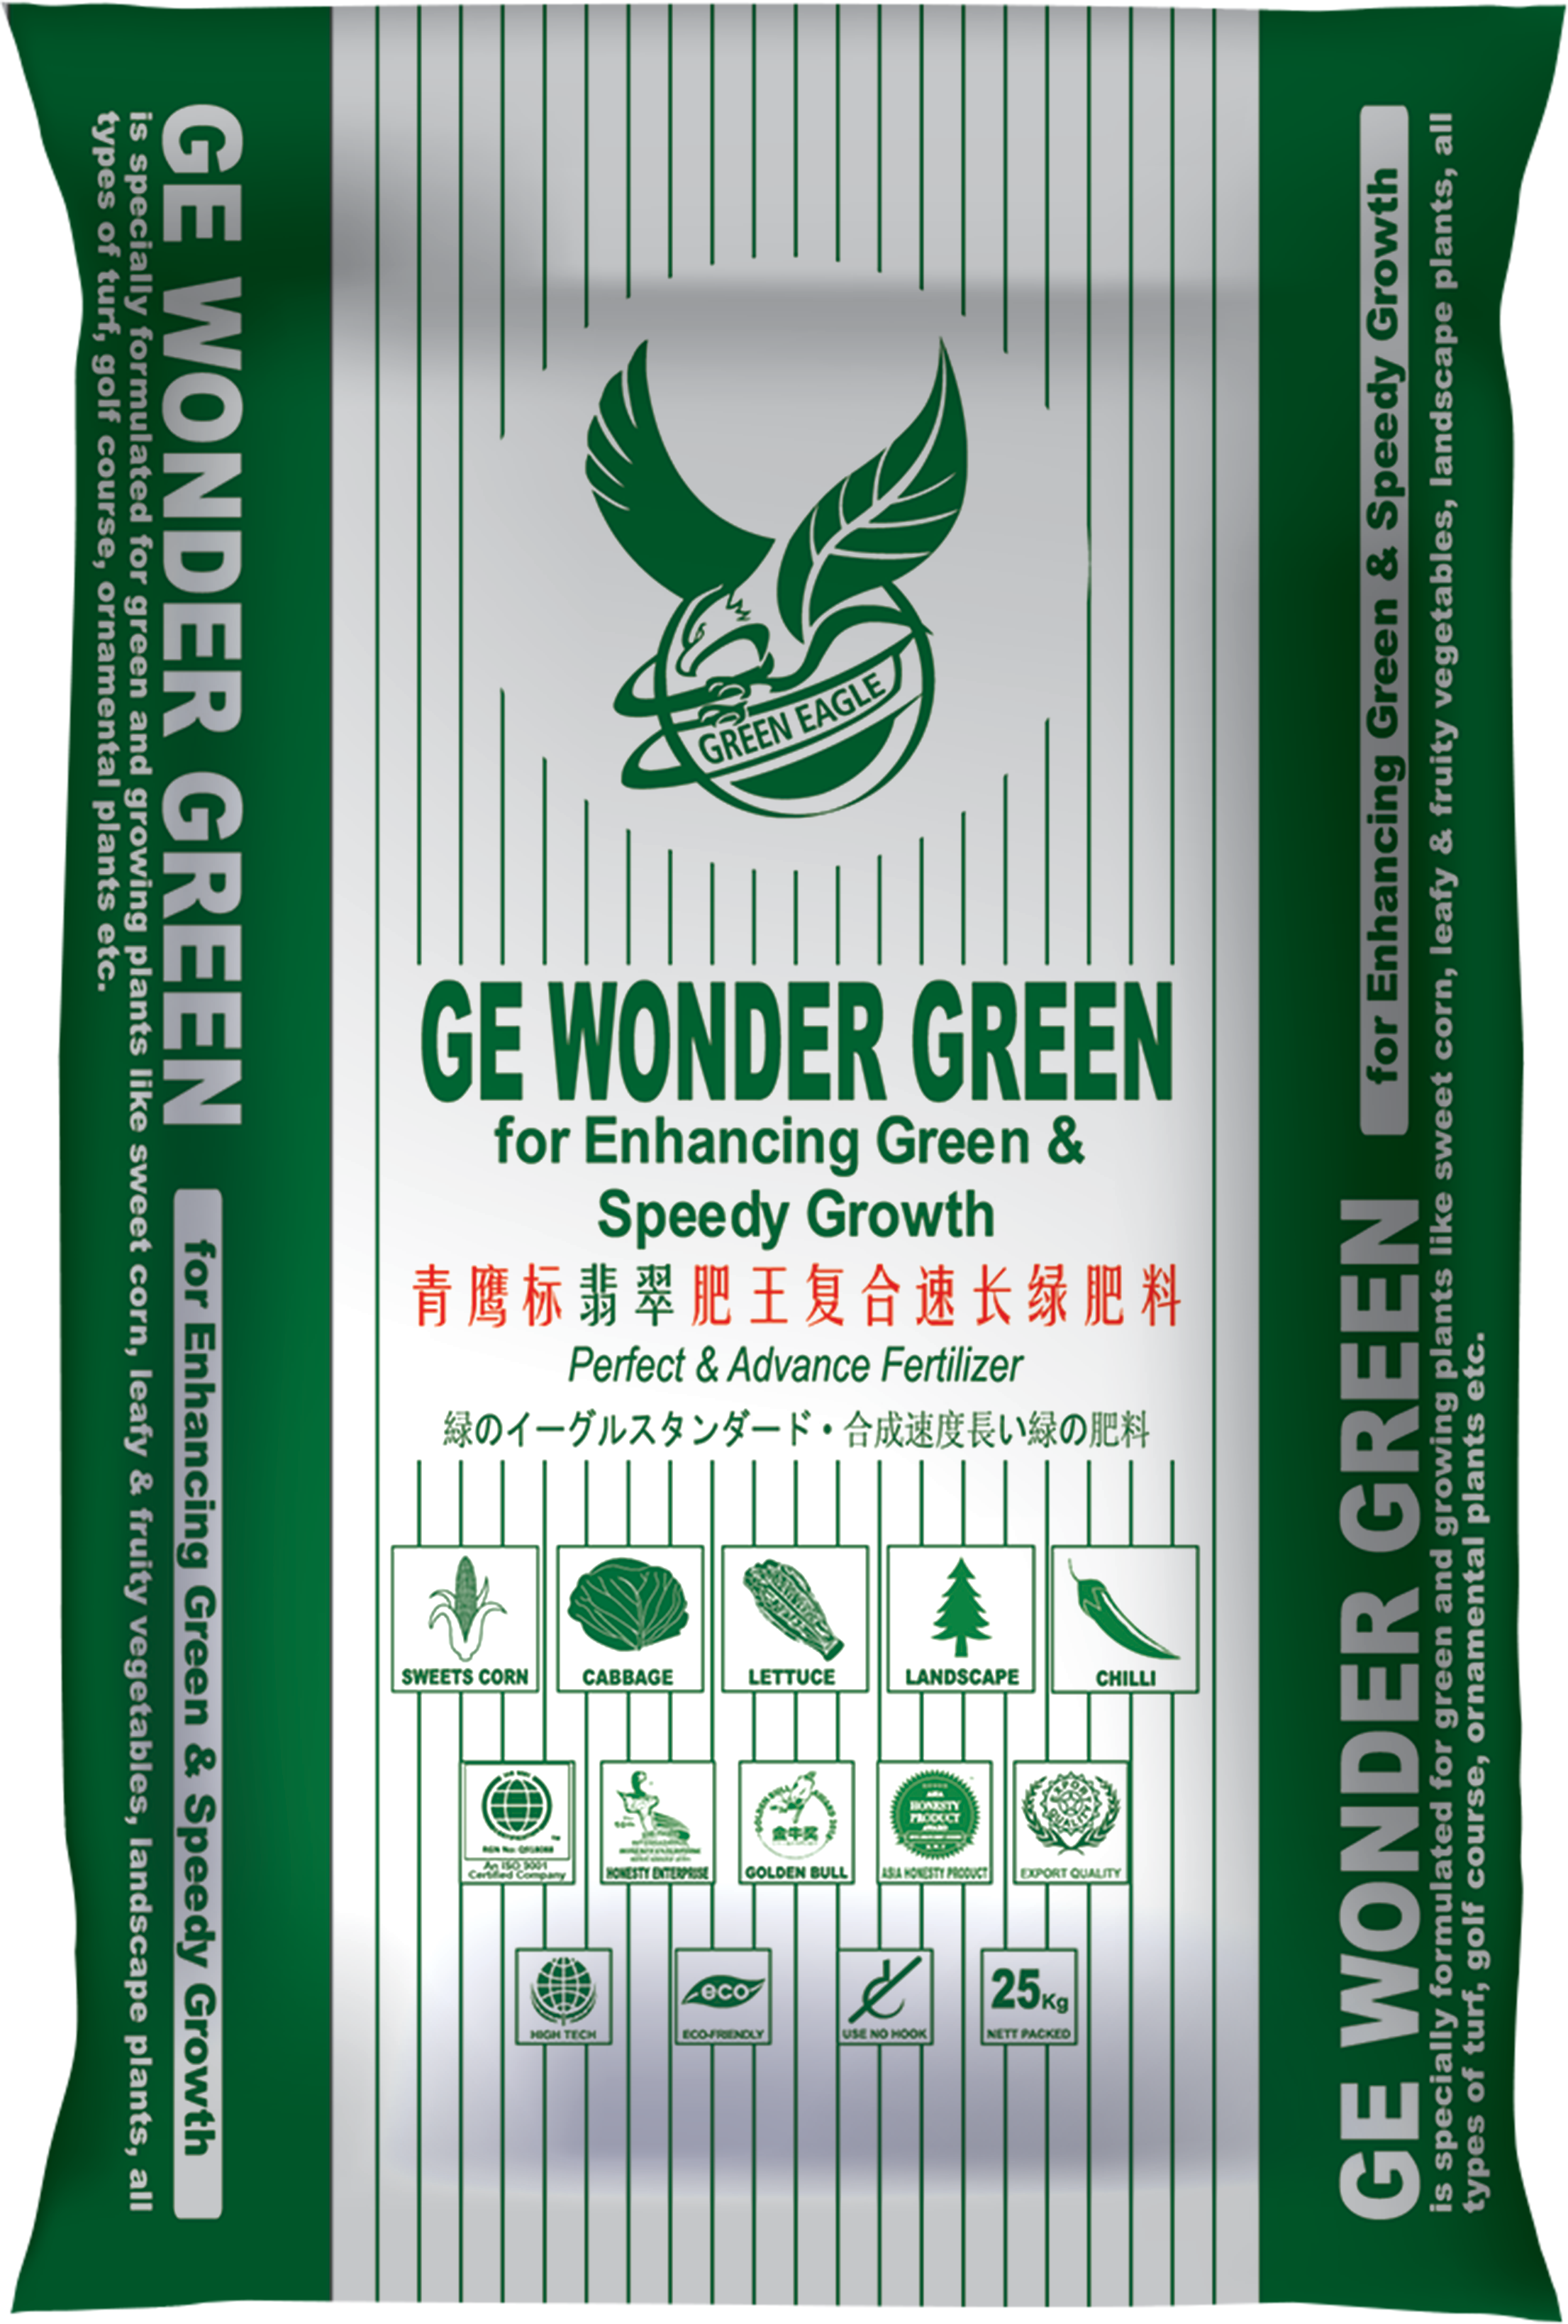 GE Wonder Green bag design (use this)